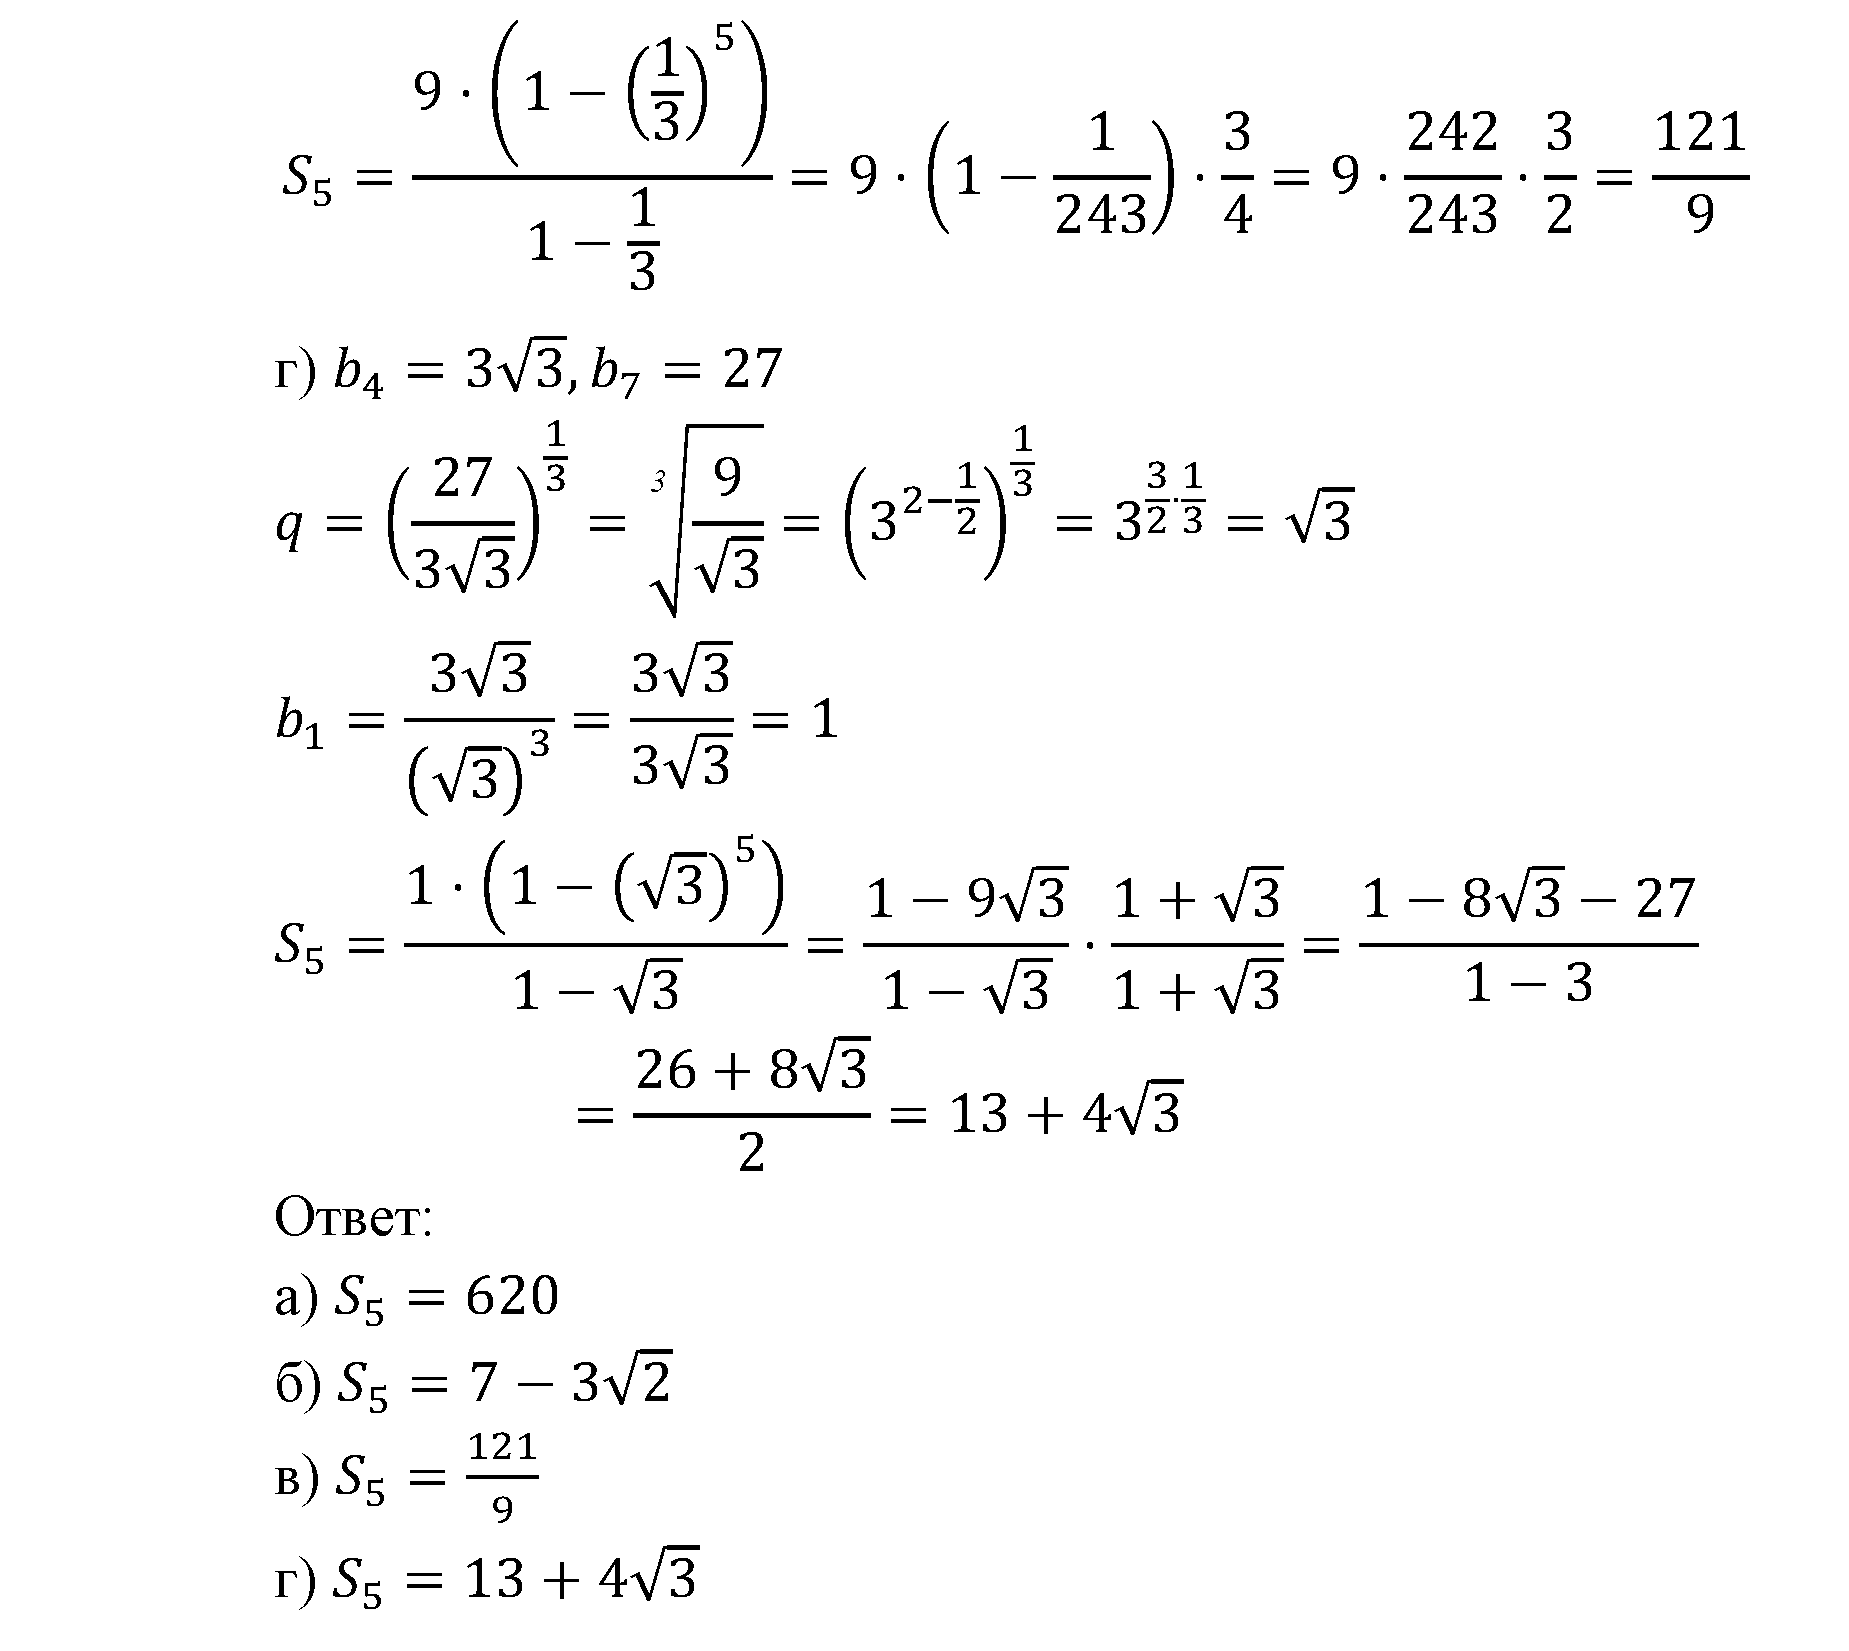 задача №17.29 алгебра 9 класс Мордкович